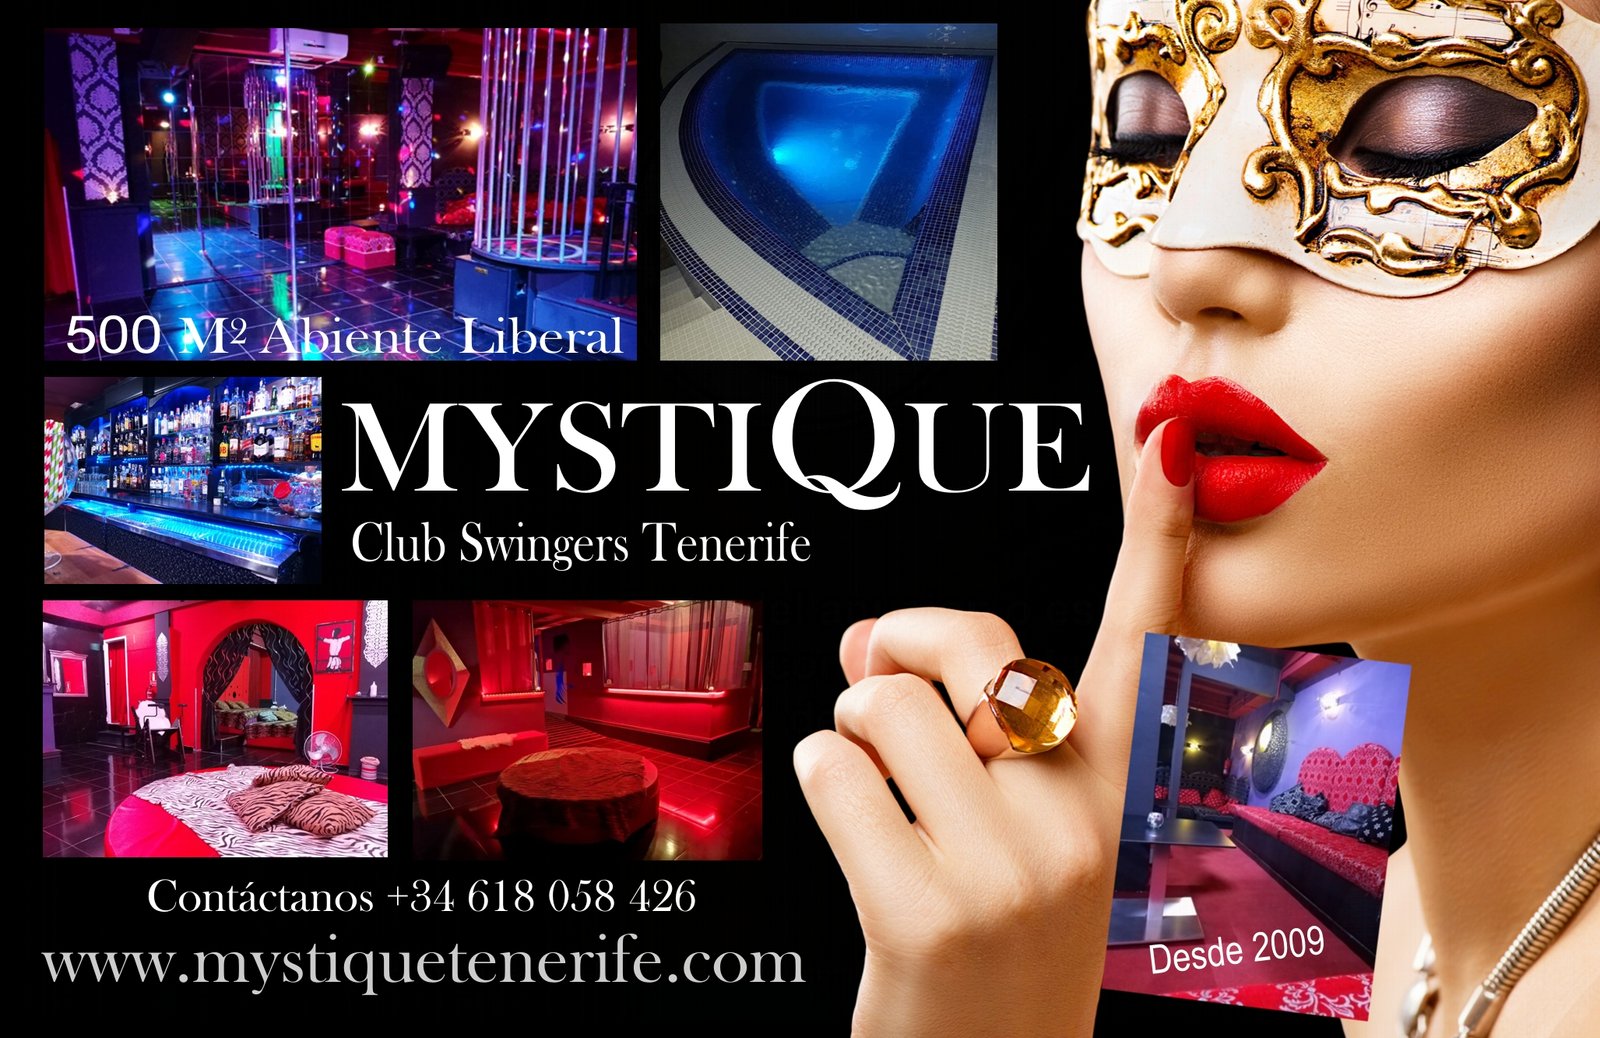 Club Mystique Tenerife photo pic